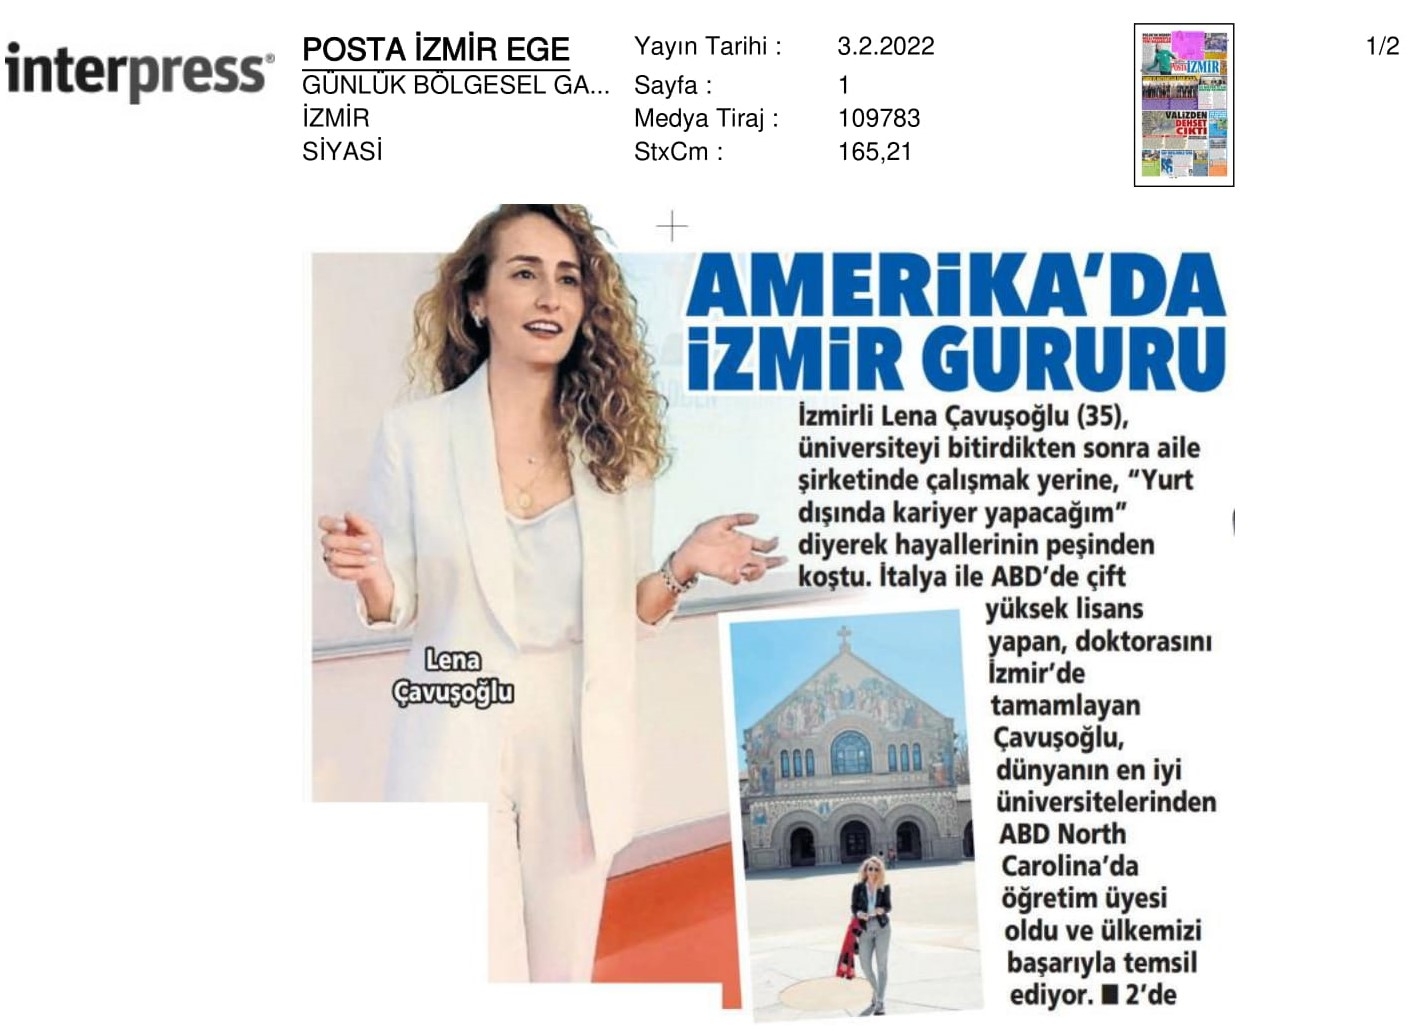 Amerika’da ‘İzmir’ gururu